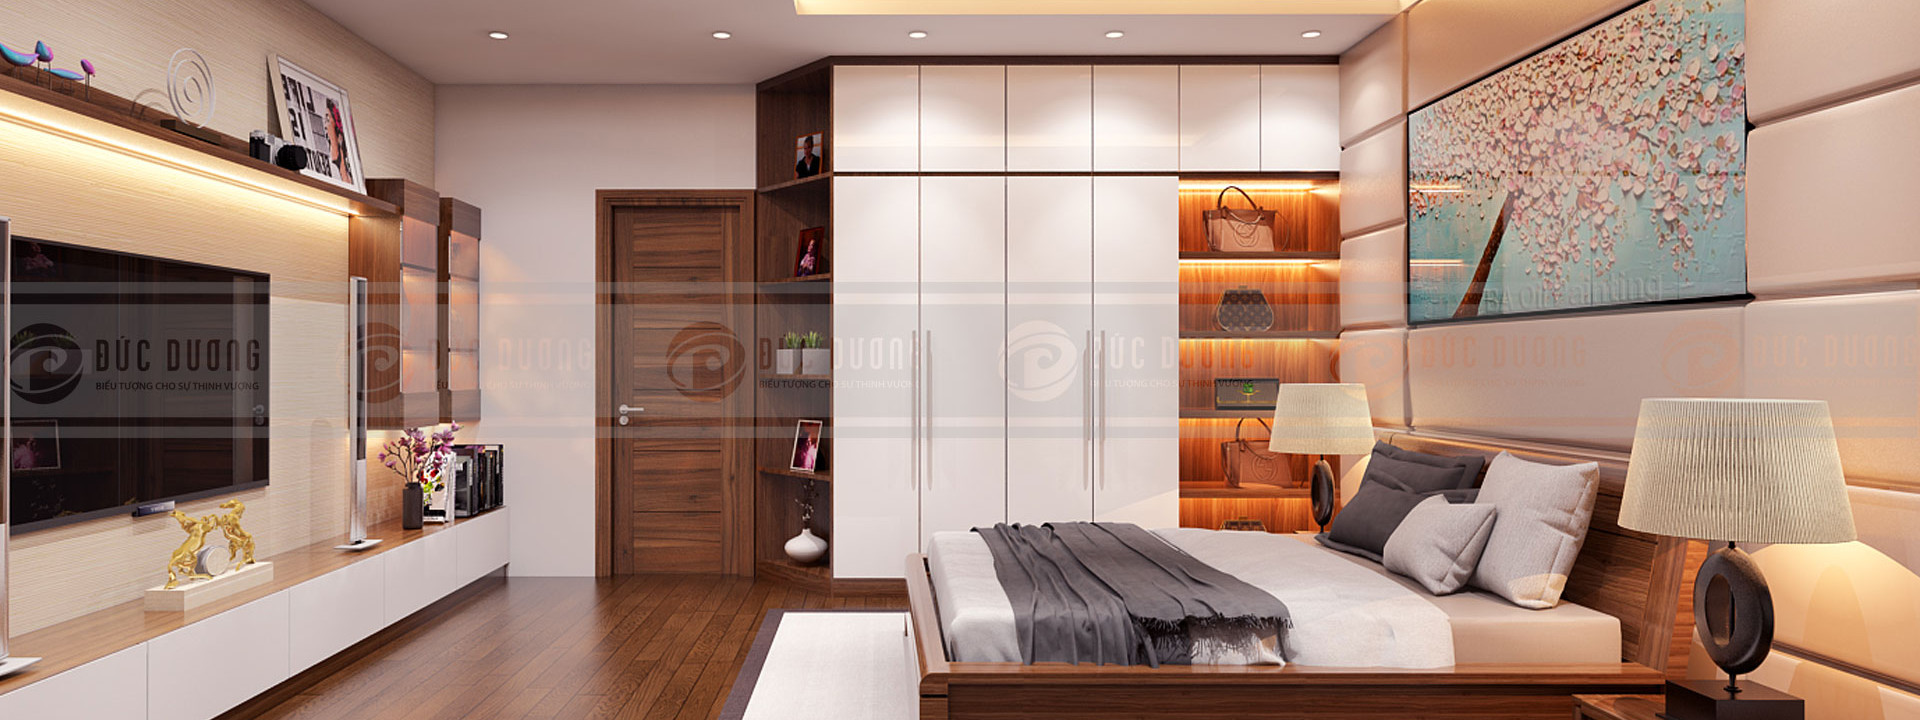 Thiết kế nội thất căn hộ 2 phòng ngủ đem tới sự tiện nghi và thoải mái